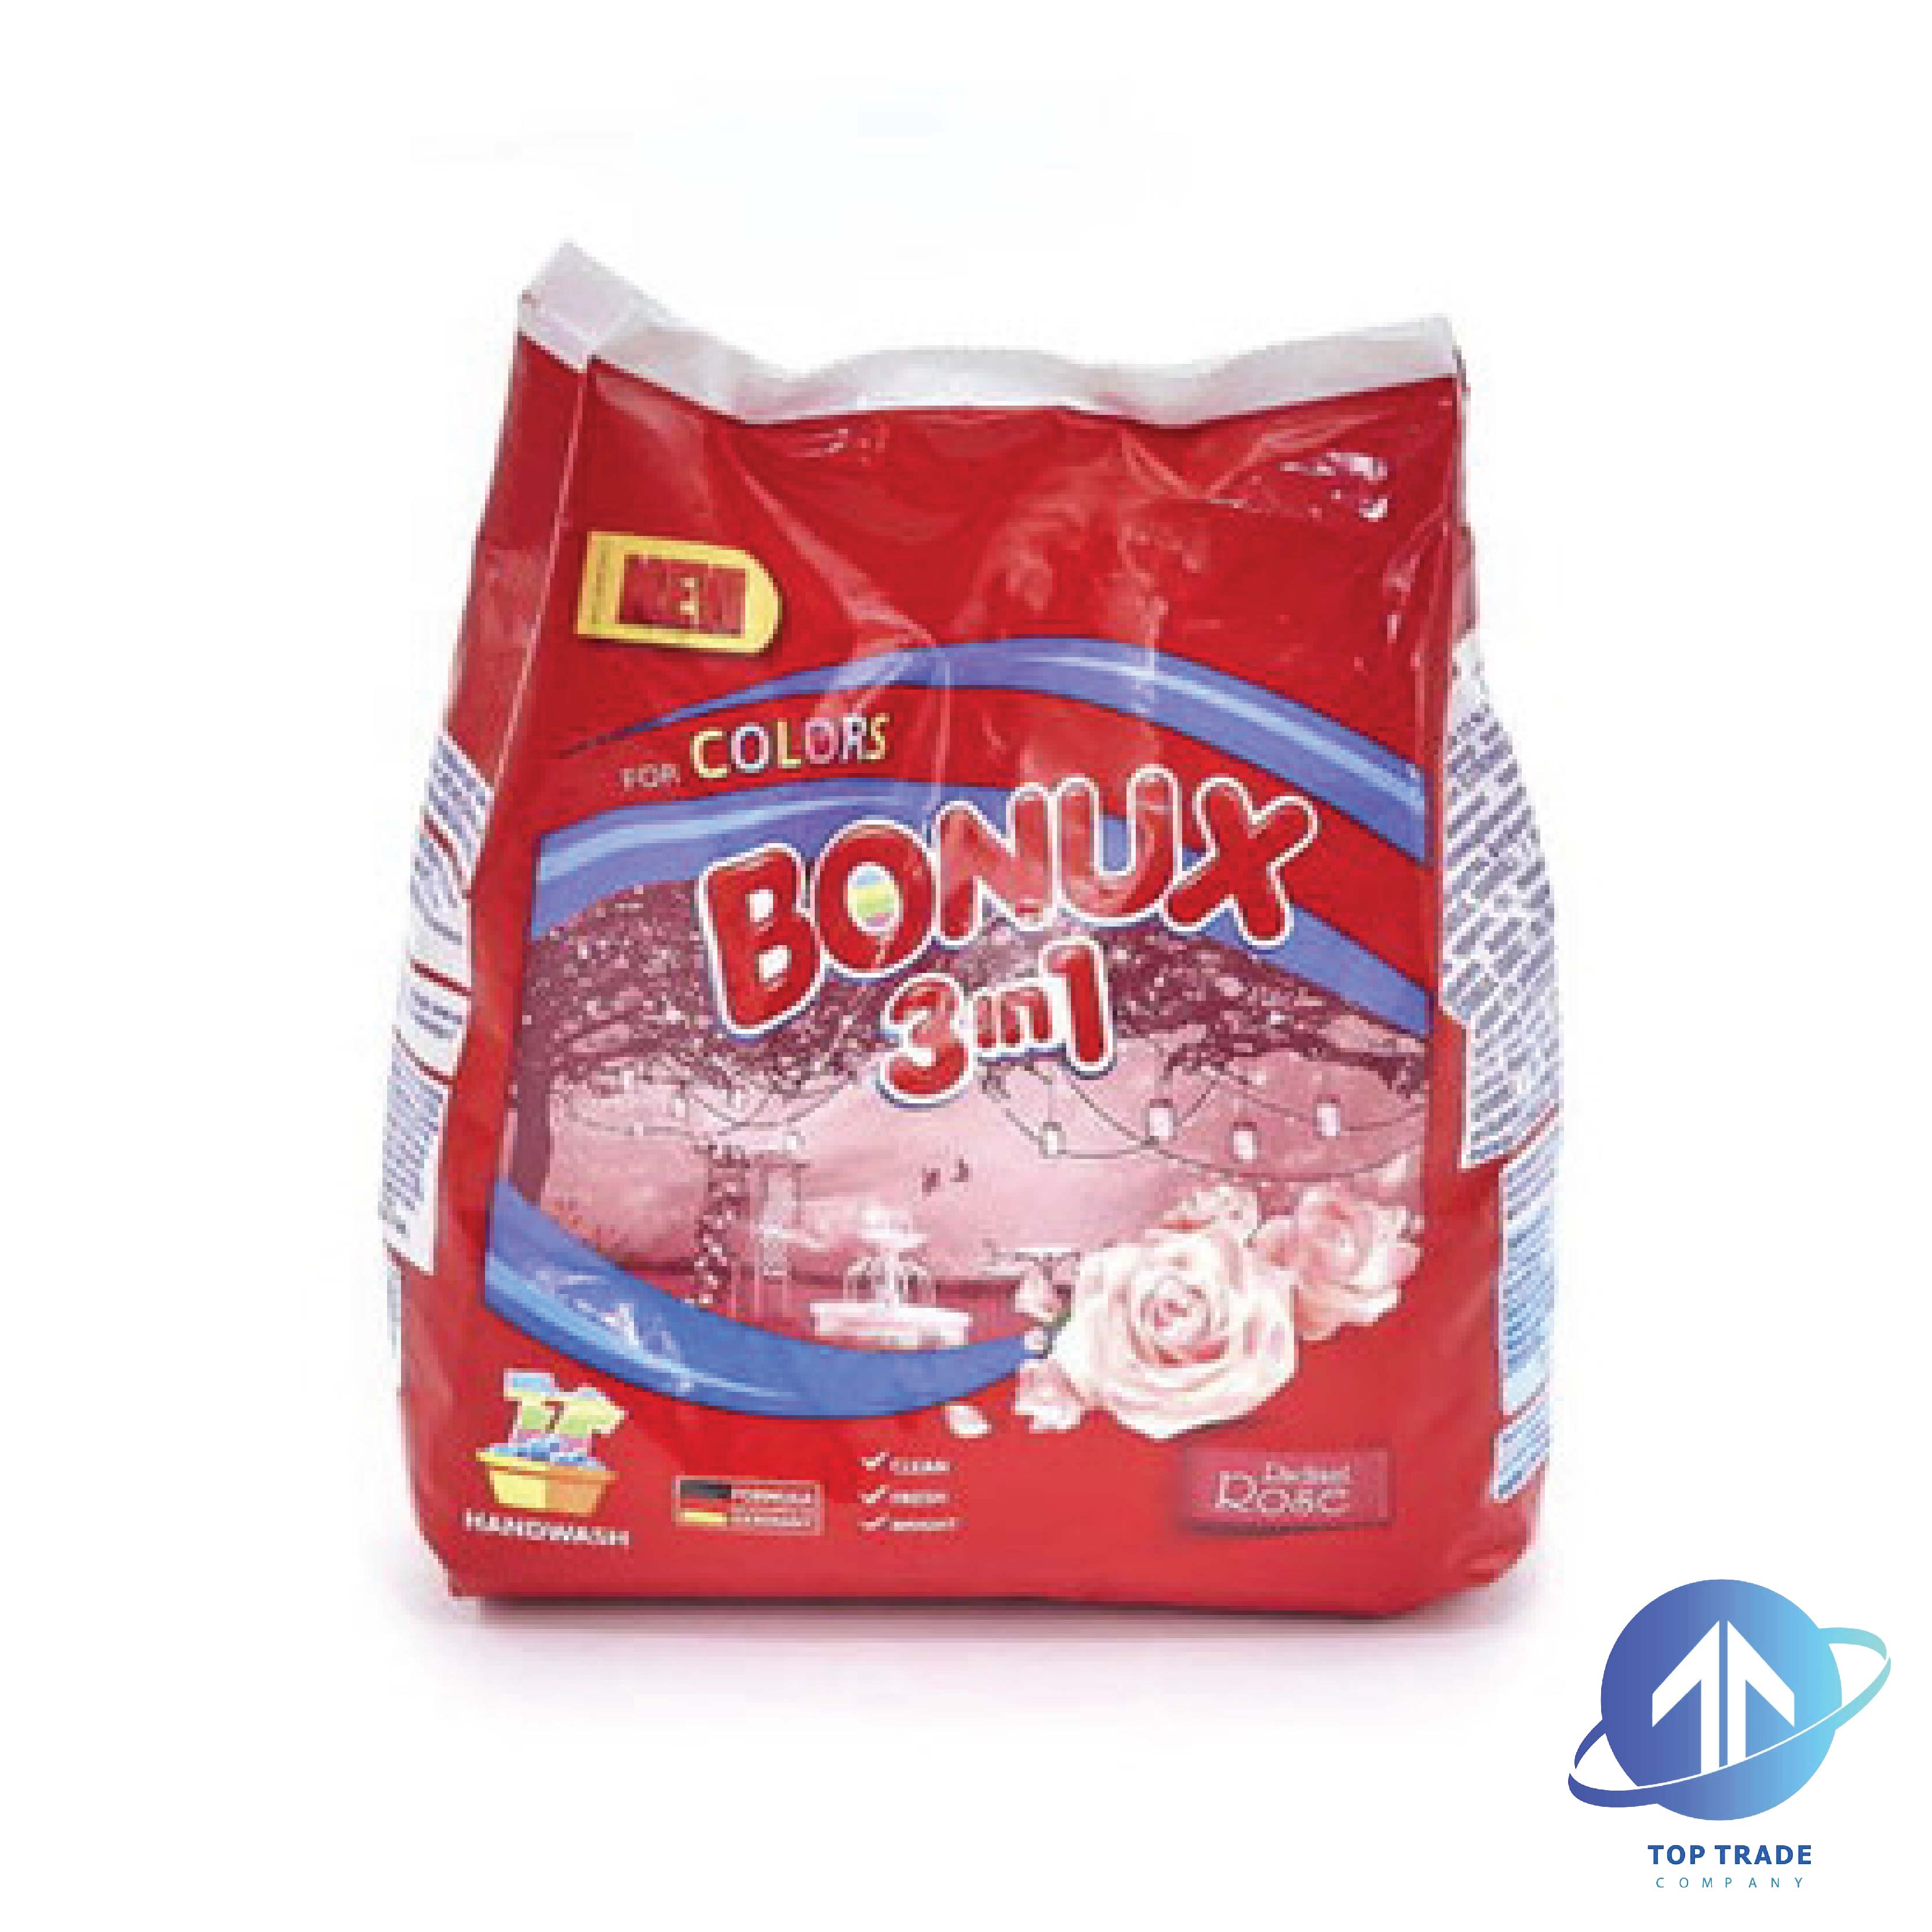 Bonux washing powder-coloured laundry hand wash 3in1 roses 400g/7sc